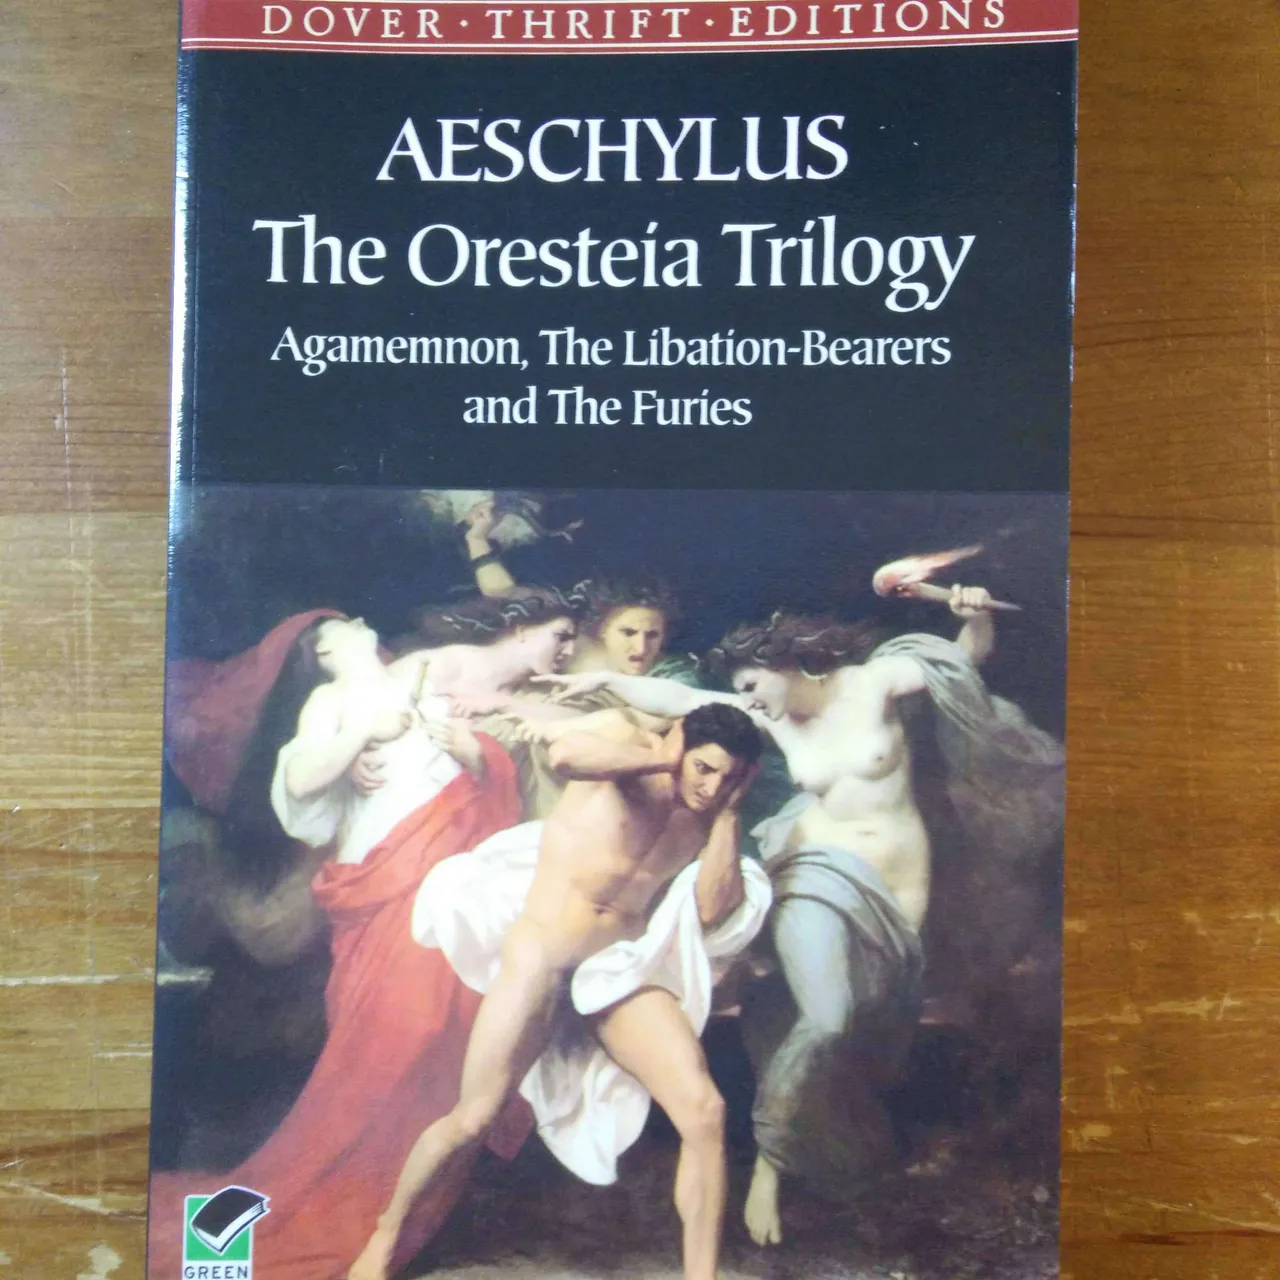 The Oresteia Trilogy by Aeschylus photo 1